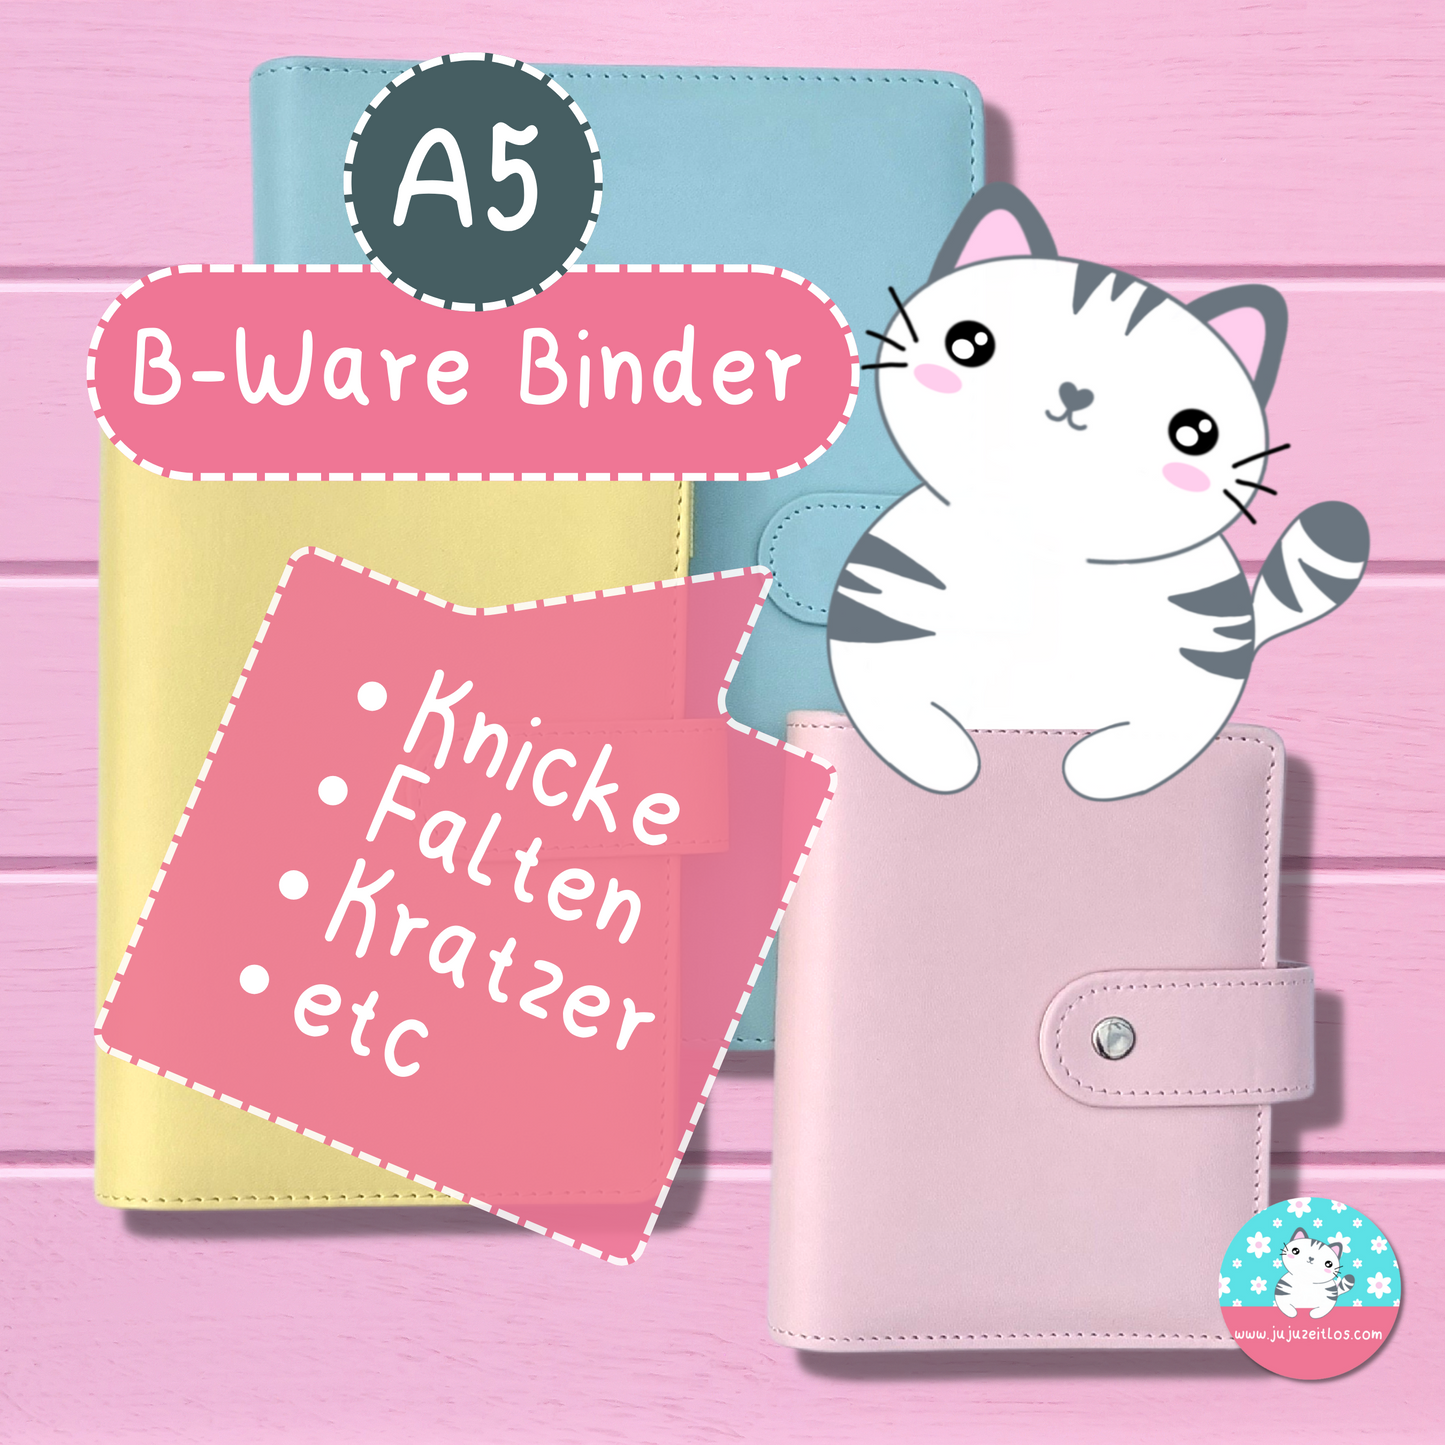 %B-WARE% A5 Budget Binder ♡Binder & Zippertaschen♡